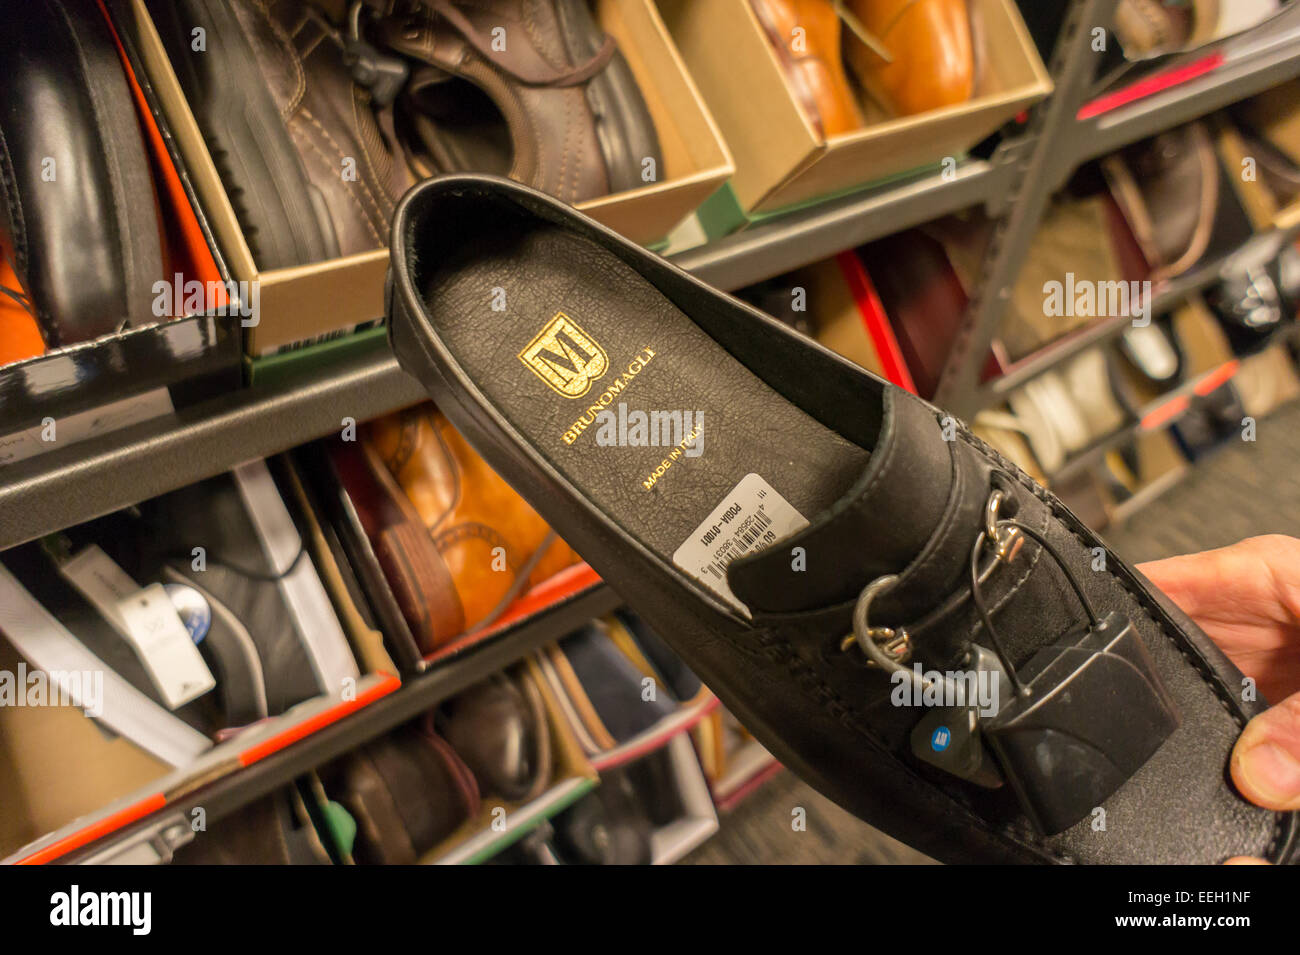 Bruno Magli zapatos de marca son vistos en una tienda de zapatos en Nueva  York el martes, 13 de enero de 2015. El zapatero de lujo italiana, en  actividad desde 1936, está